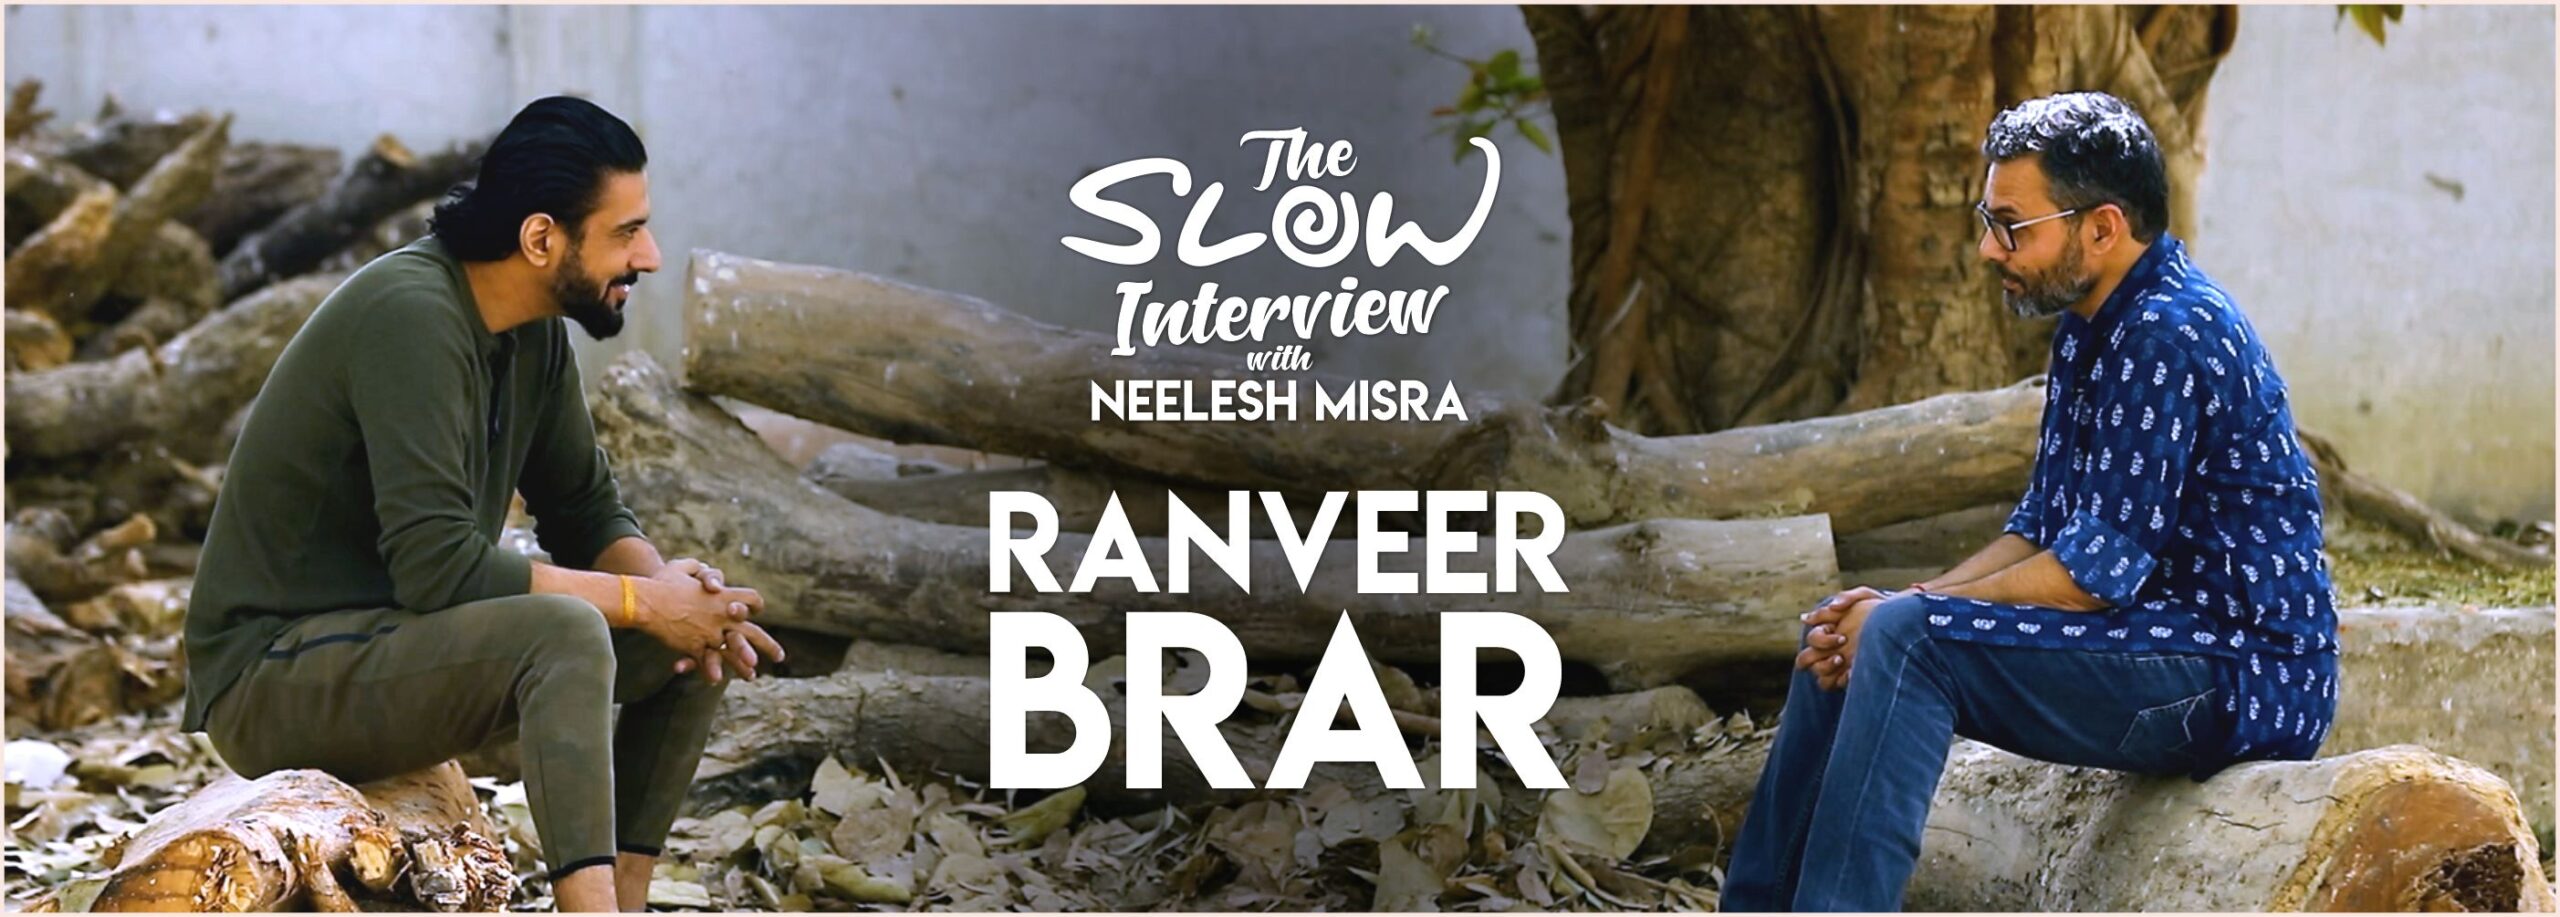 slow-interview-ranveer-brar